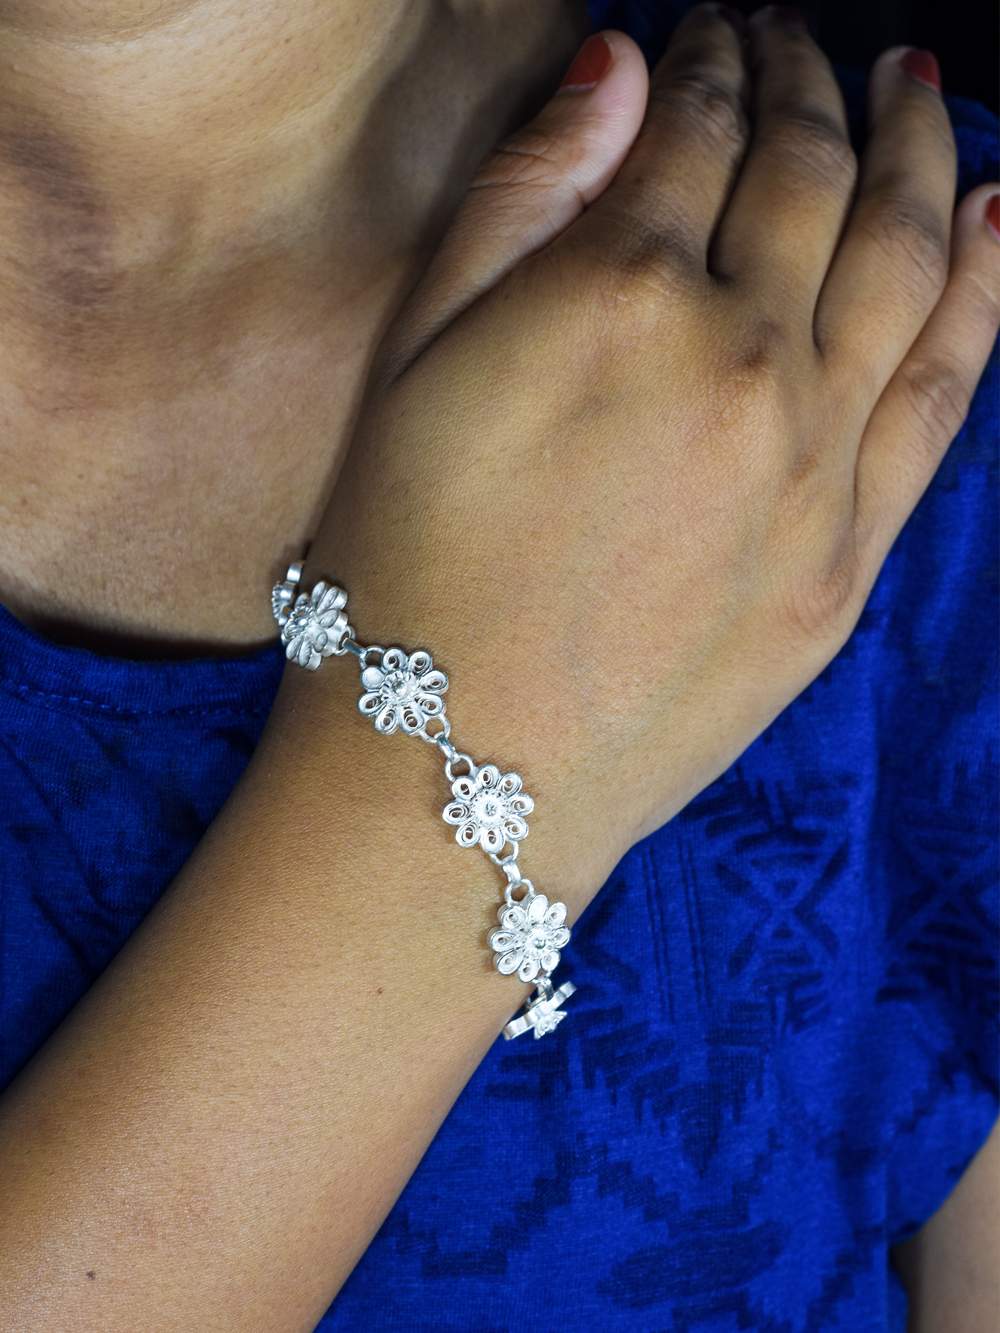 Diamond Cut Bracelet Design for Women - LvaCreation